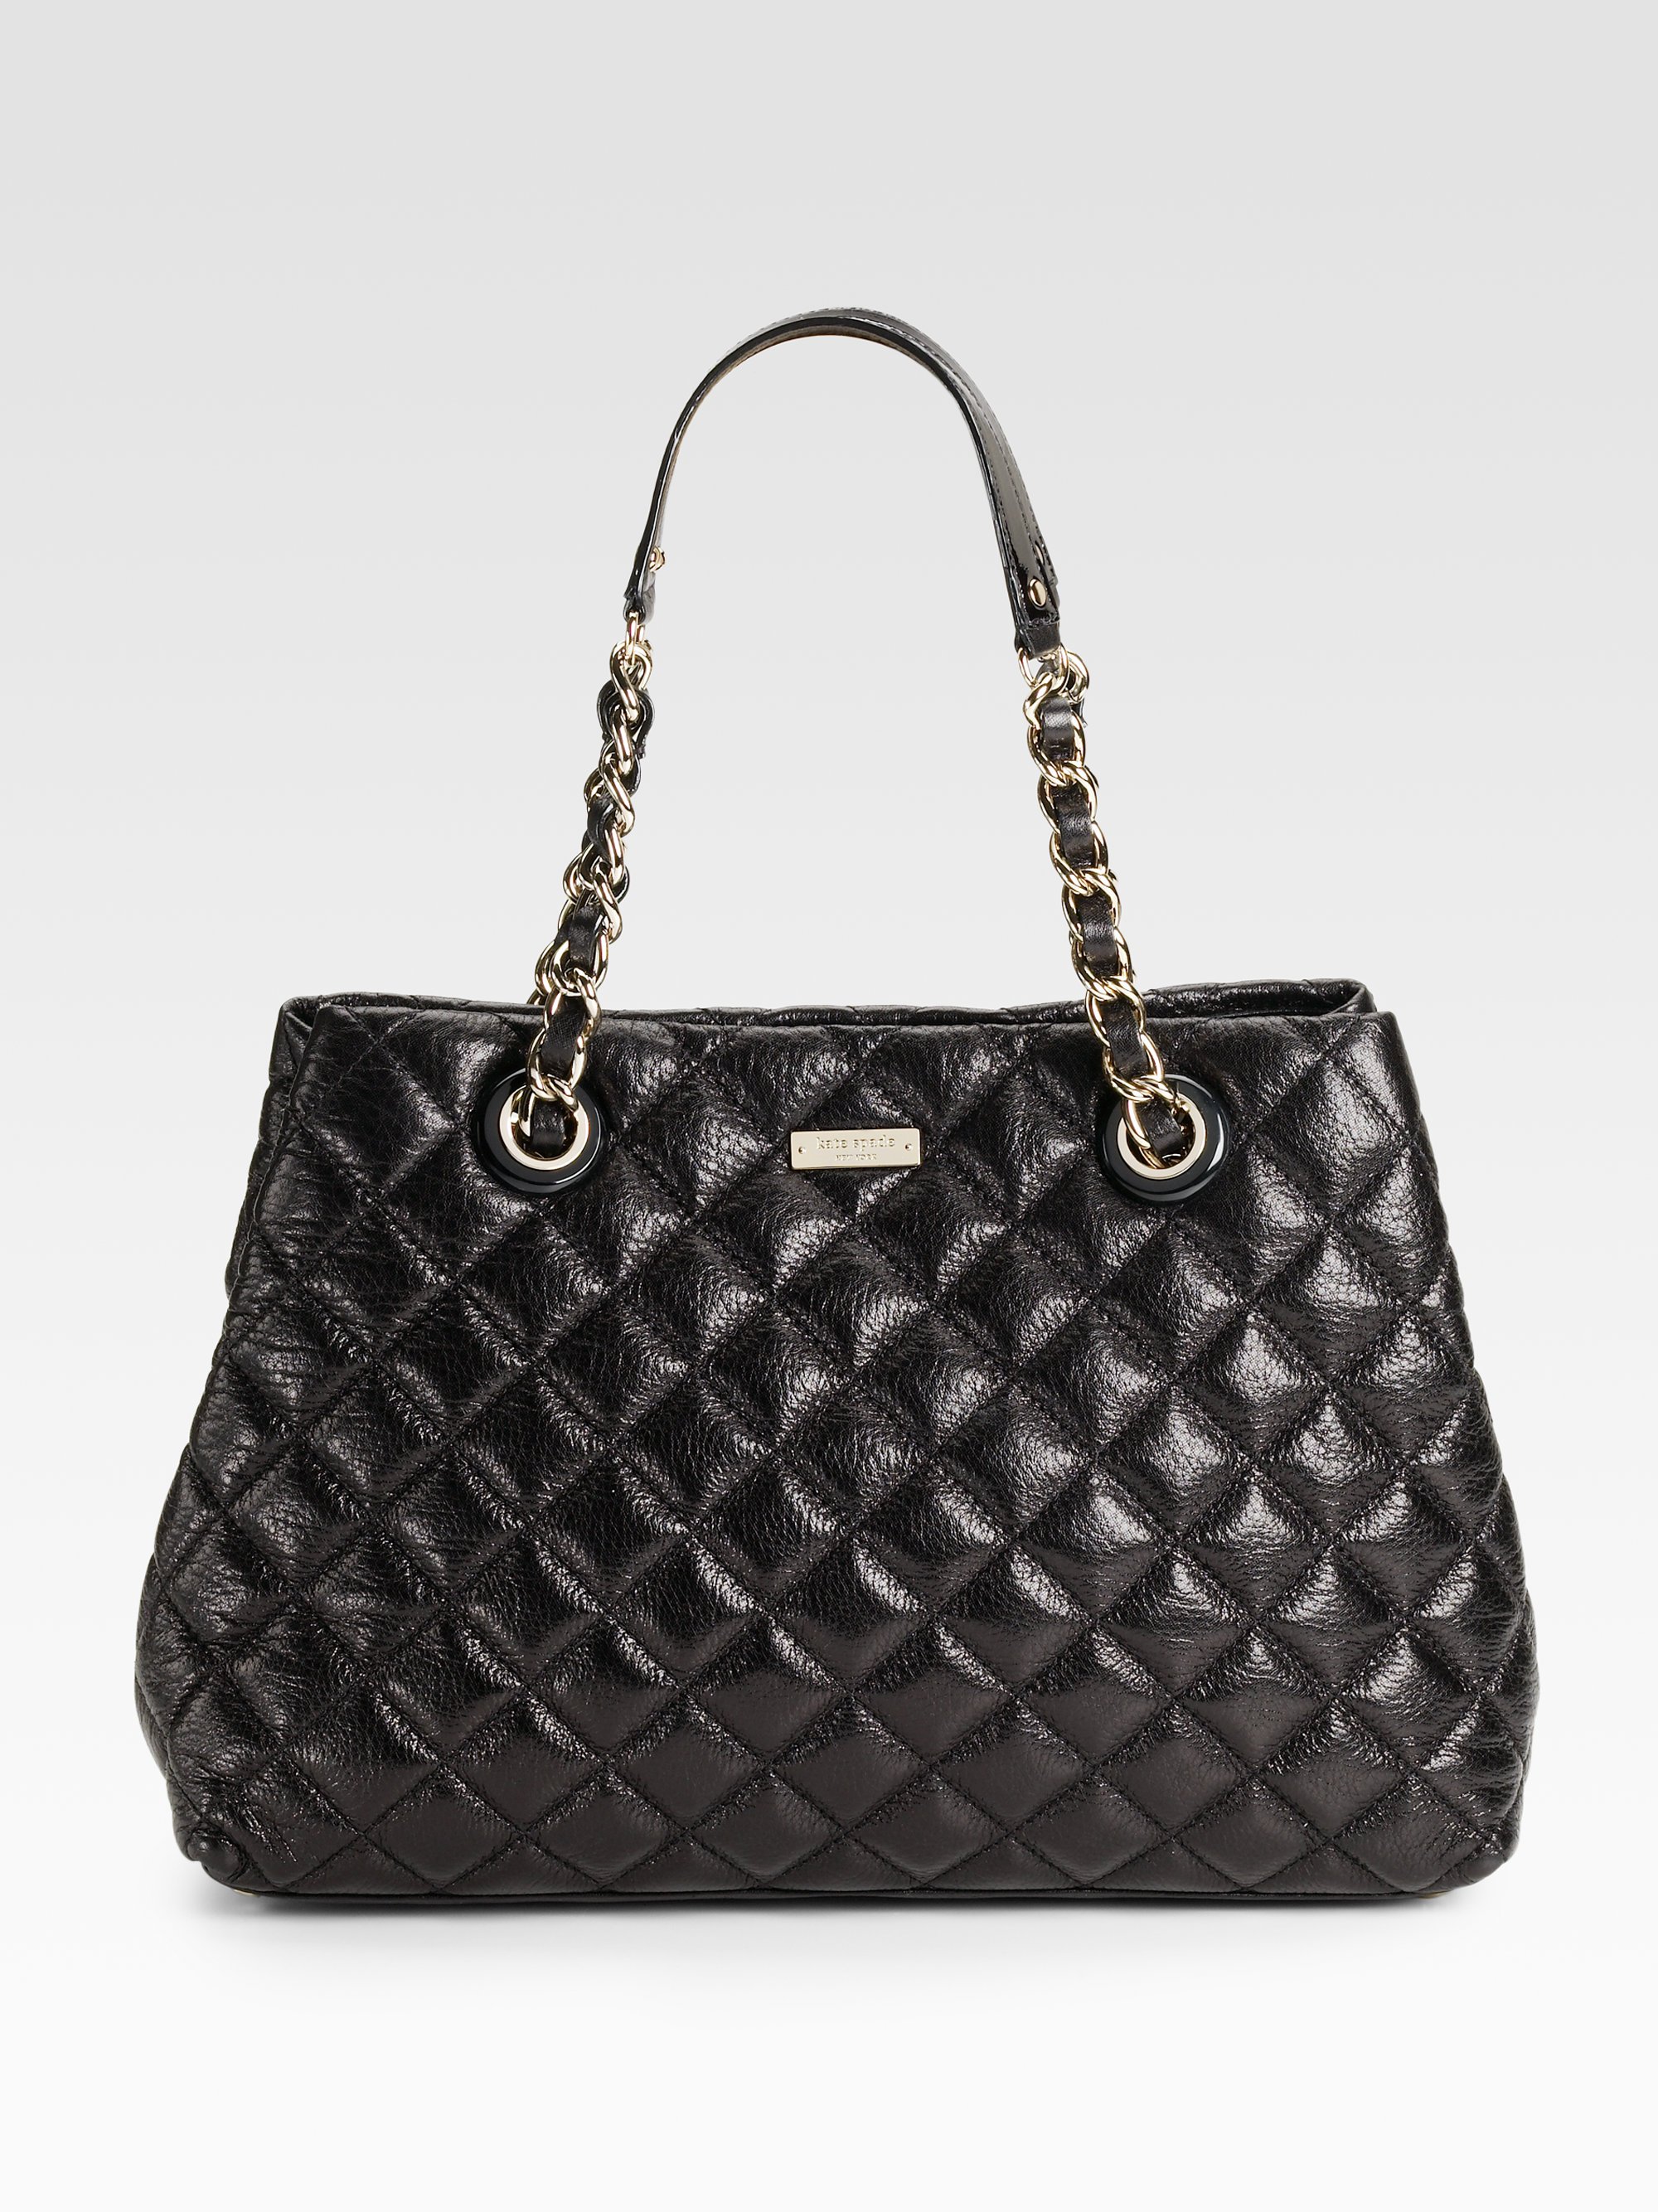 Leather Tote Handbag Kate Spade | semashow.com